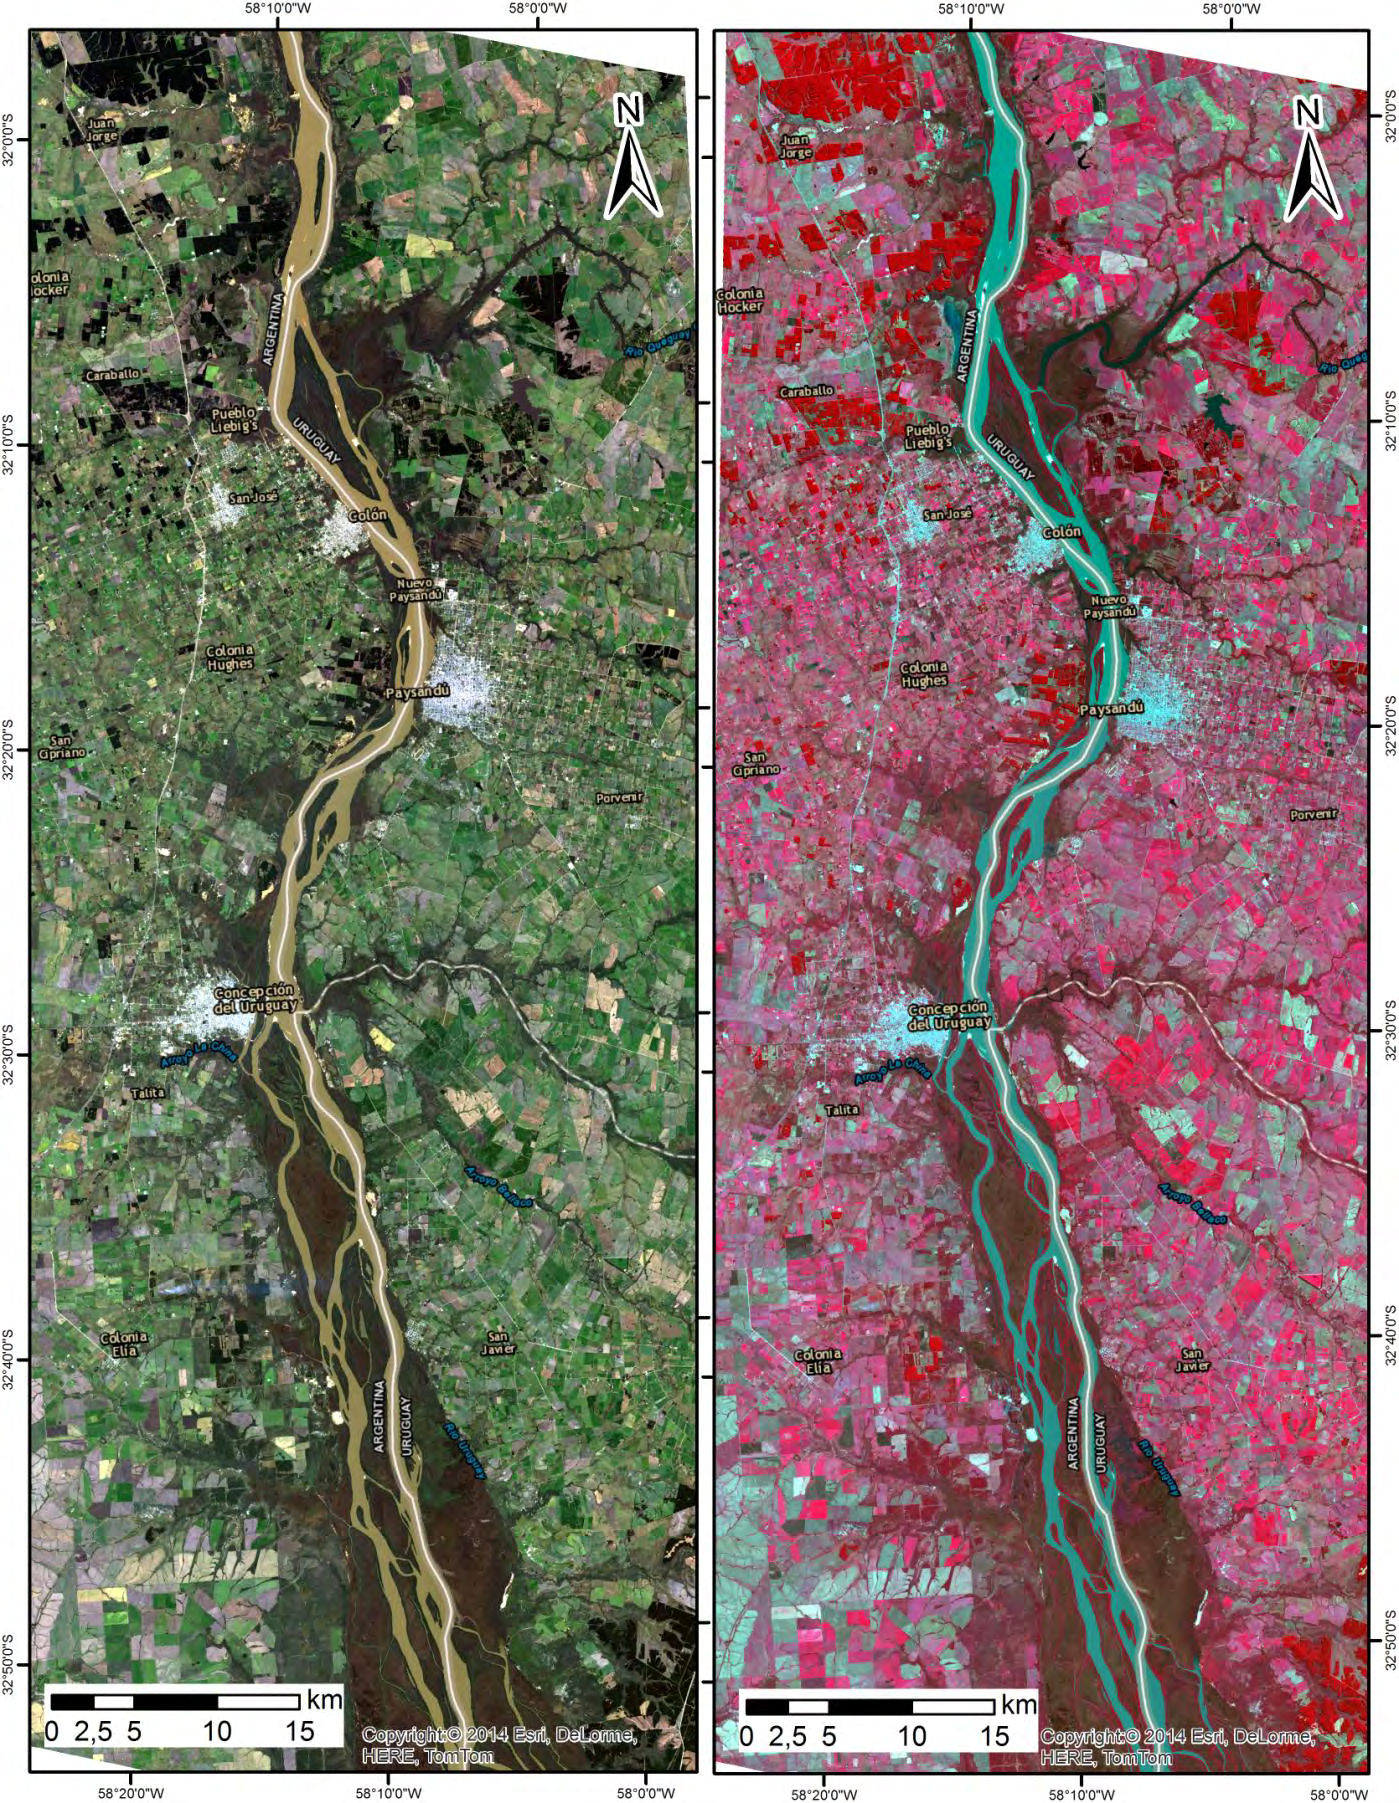 Mosaico Satelital de la Zona 4, elaborado a partir de imágenes Landsat 8